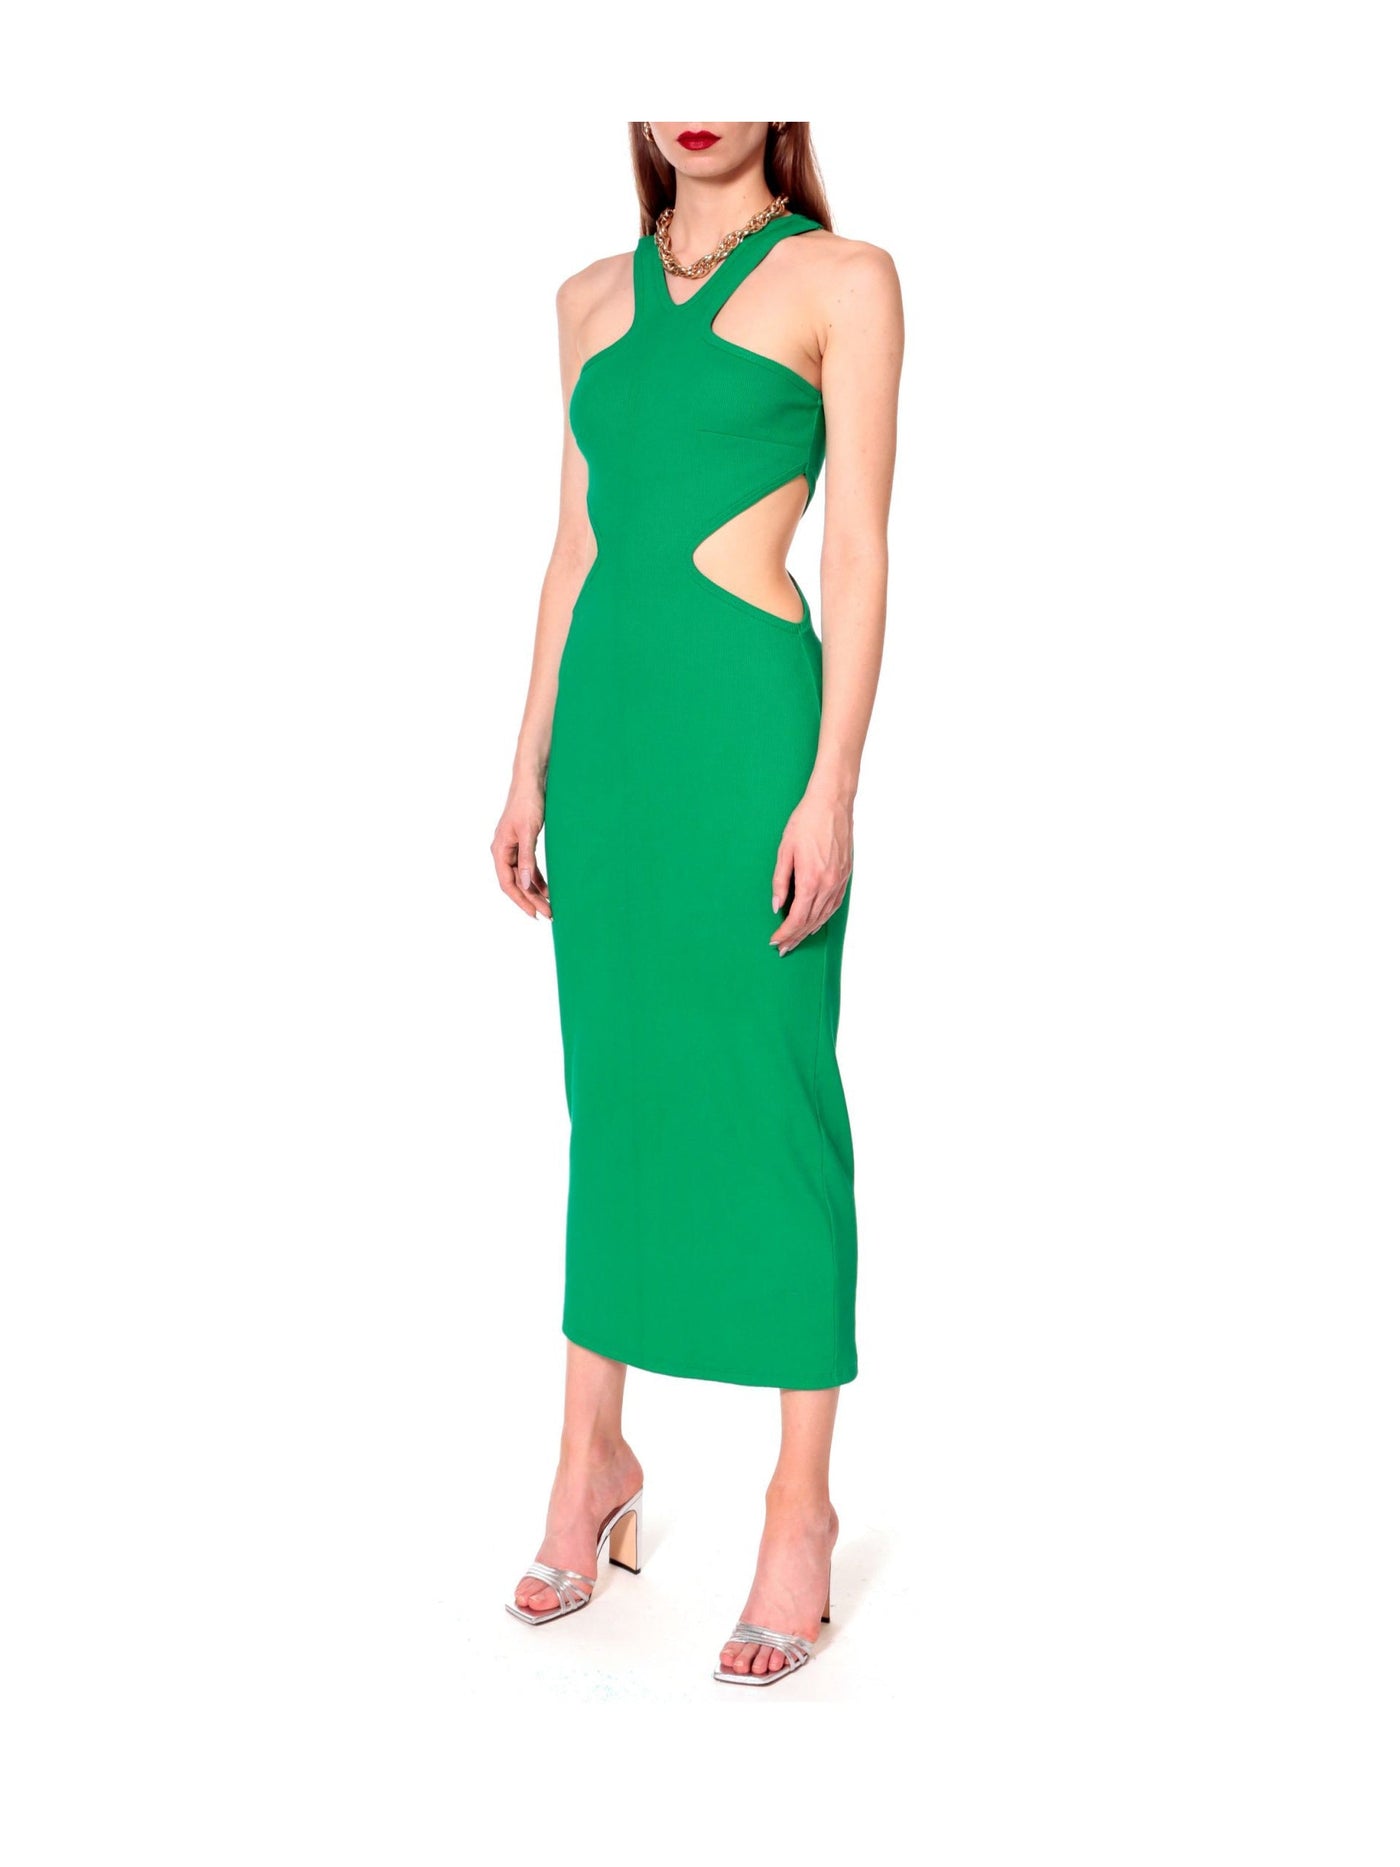 Giselle Brasil Green Dress